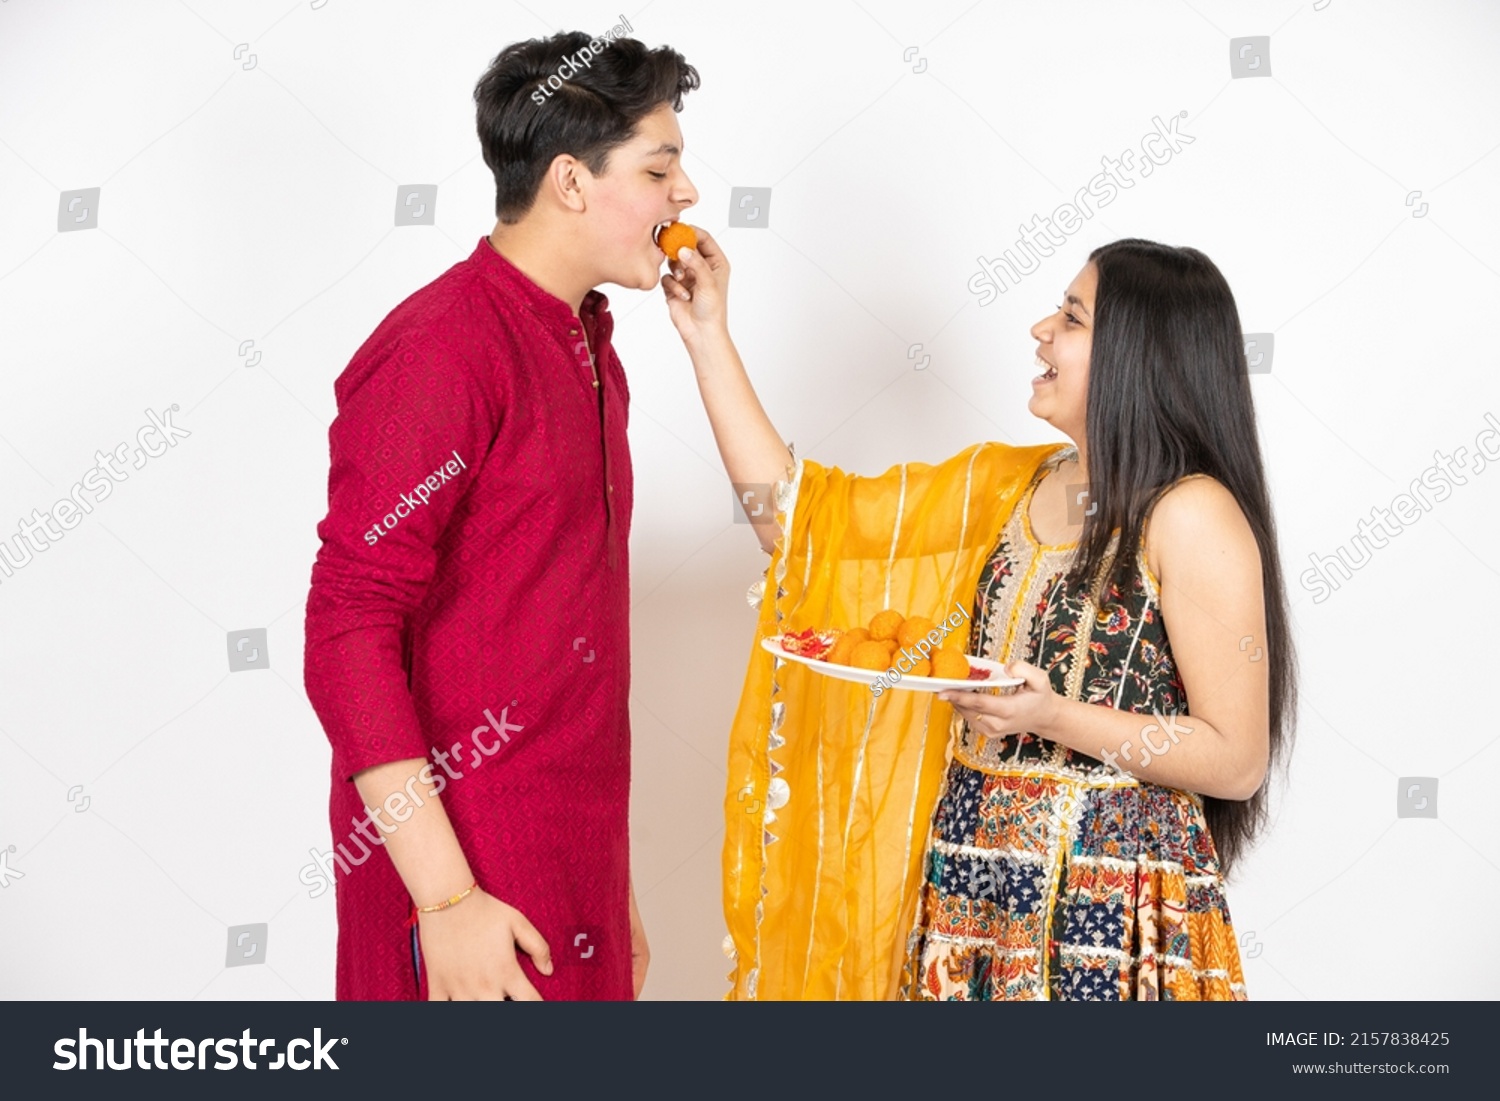 Young Indian brother and sister celebrating Diwali, rakshabandhan or bhai dooj festival isolated on white studio background. enjoying sweet laddo, #2157838425